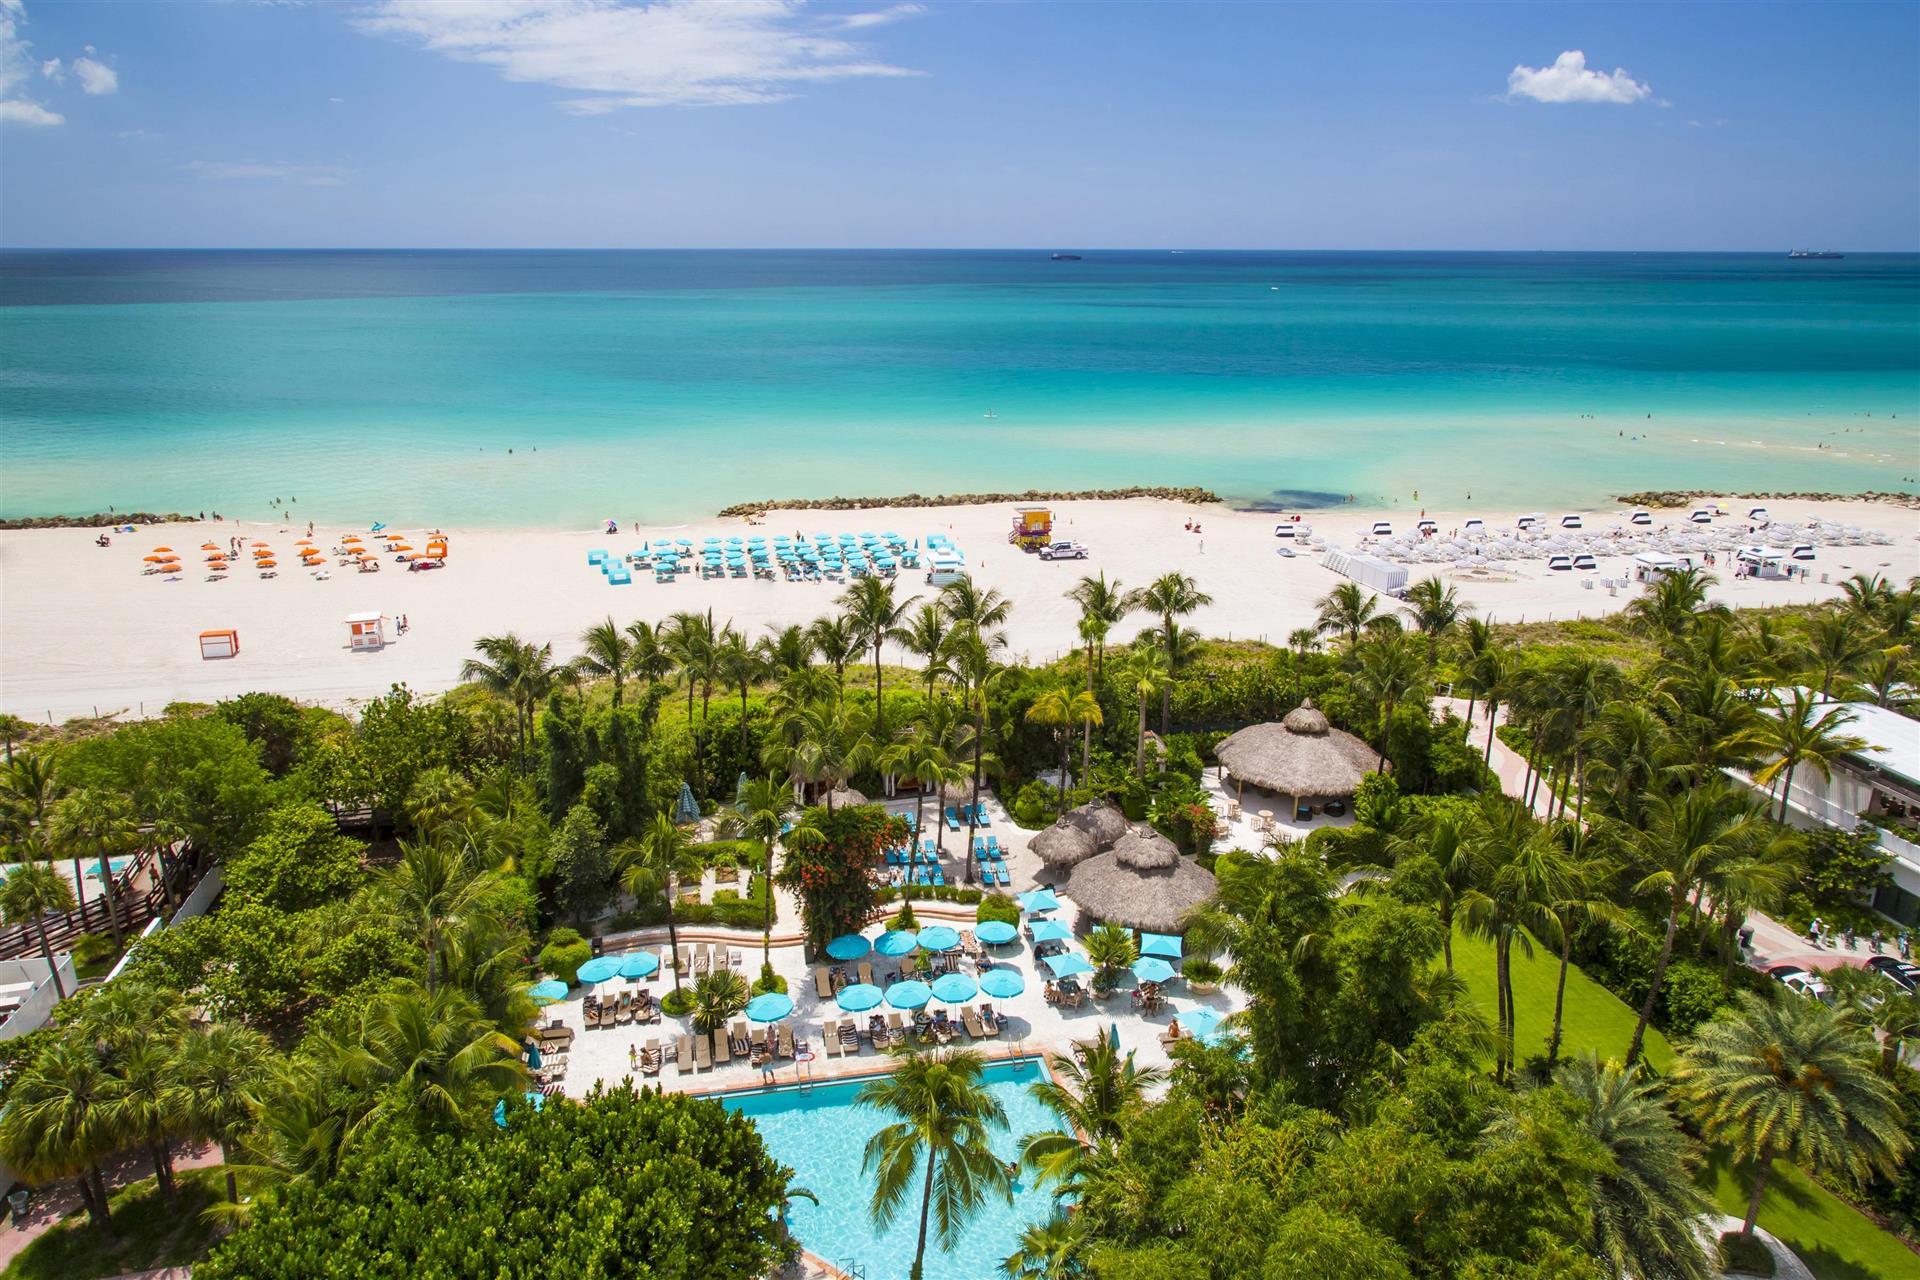 The Palms Hotel & Spa in Miami Beach, FL